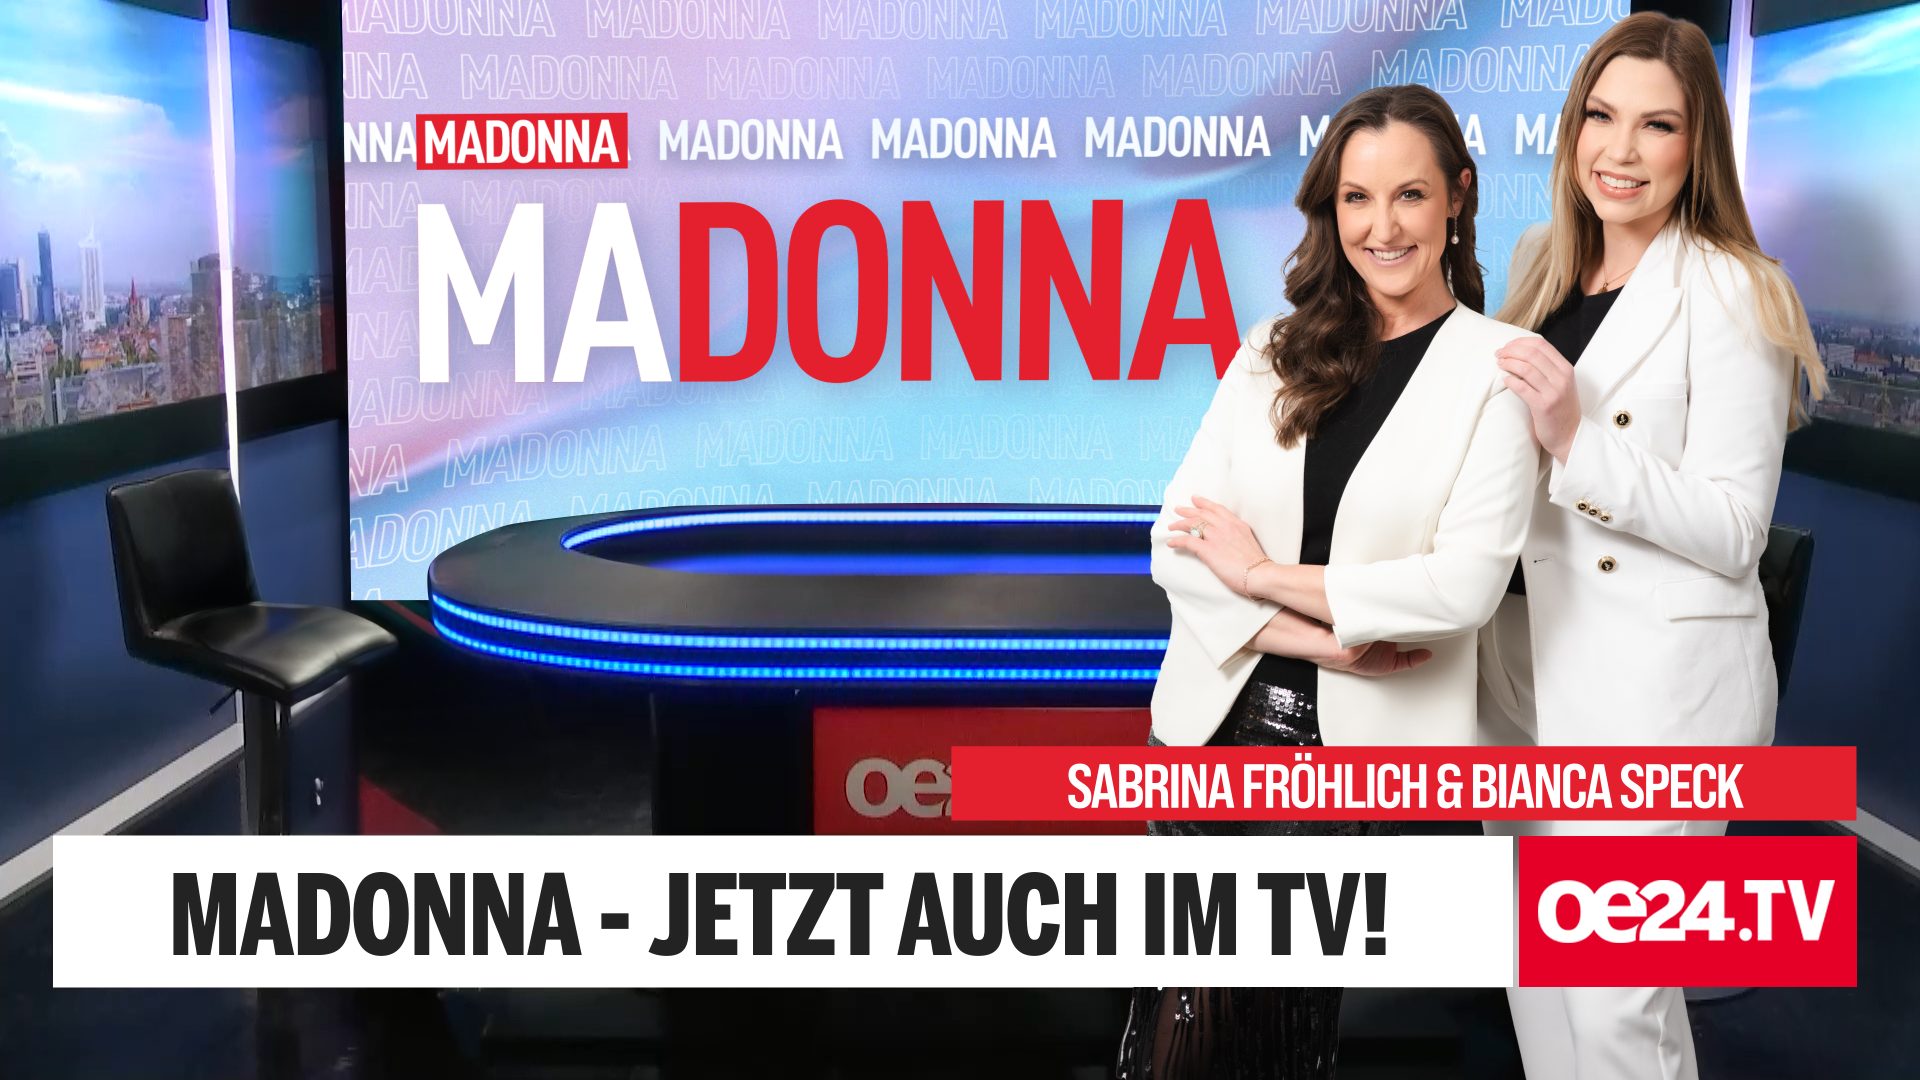 MADONNA auf oe24.TV